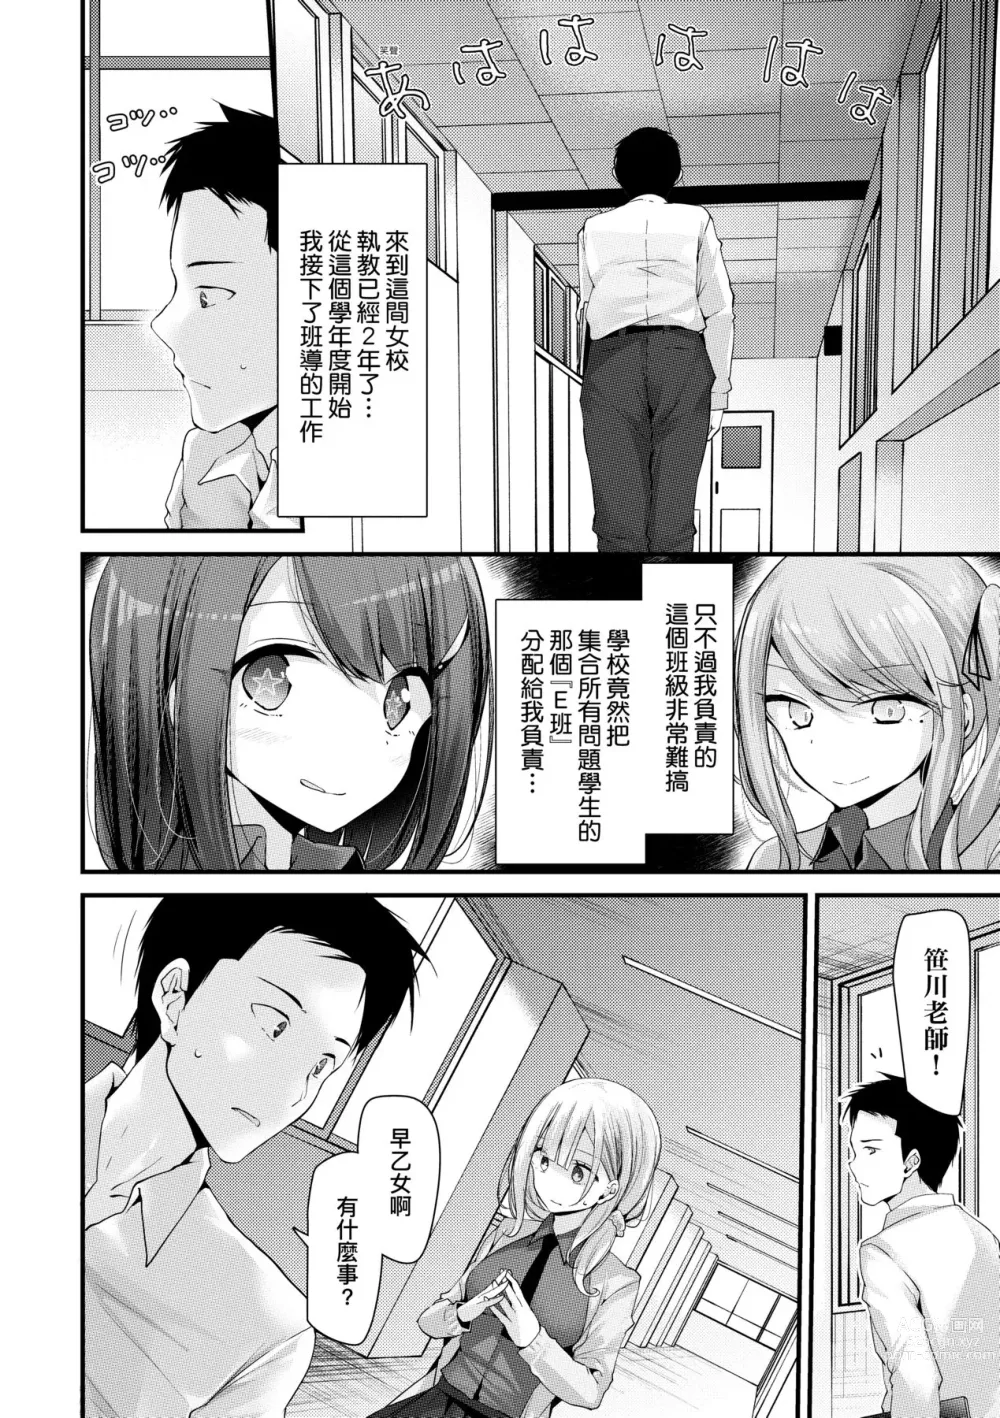 Page 11 of manga 自慰套教室-新學期- 女學生播種懲罰計畫 (decensored)